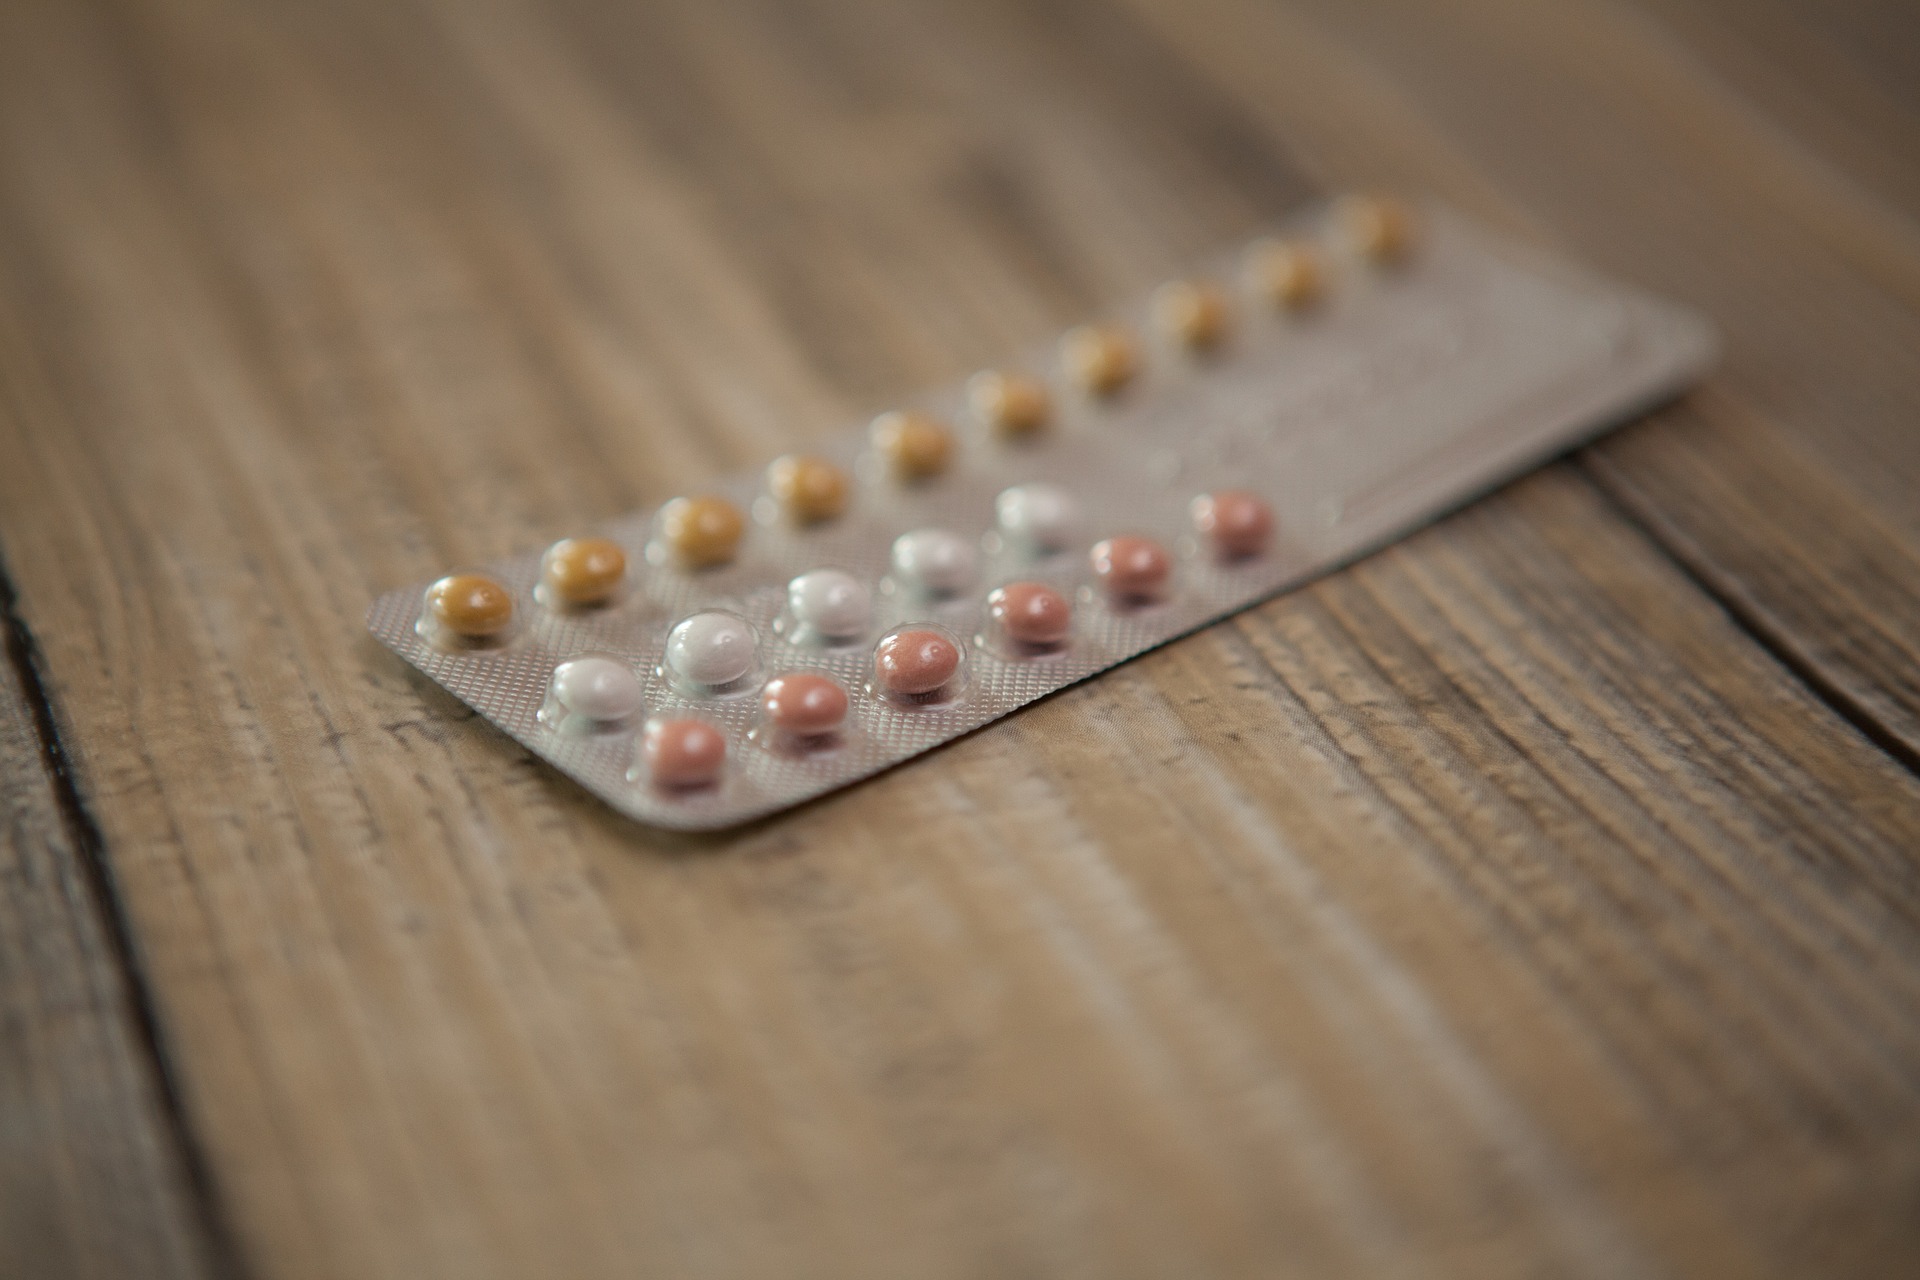 Pilule gratuite pour les femmes jusqu'à l'âge de 25 ans au lieu de 18 aujourd'hui